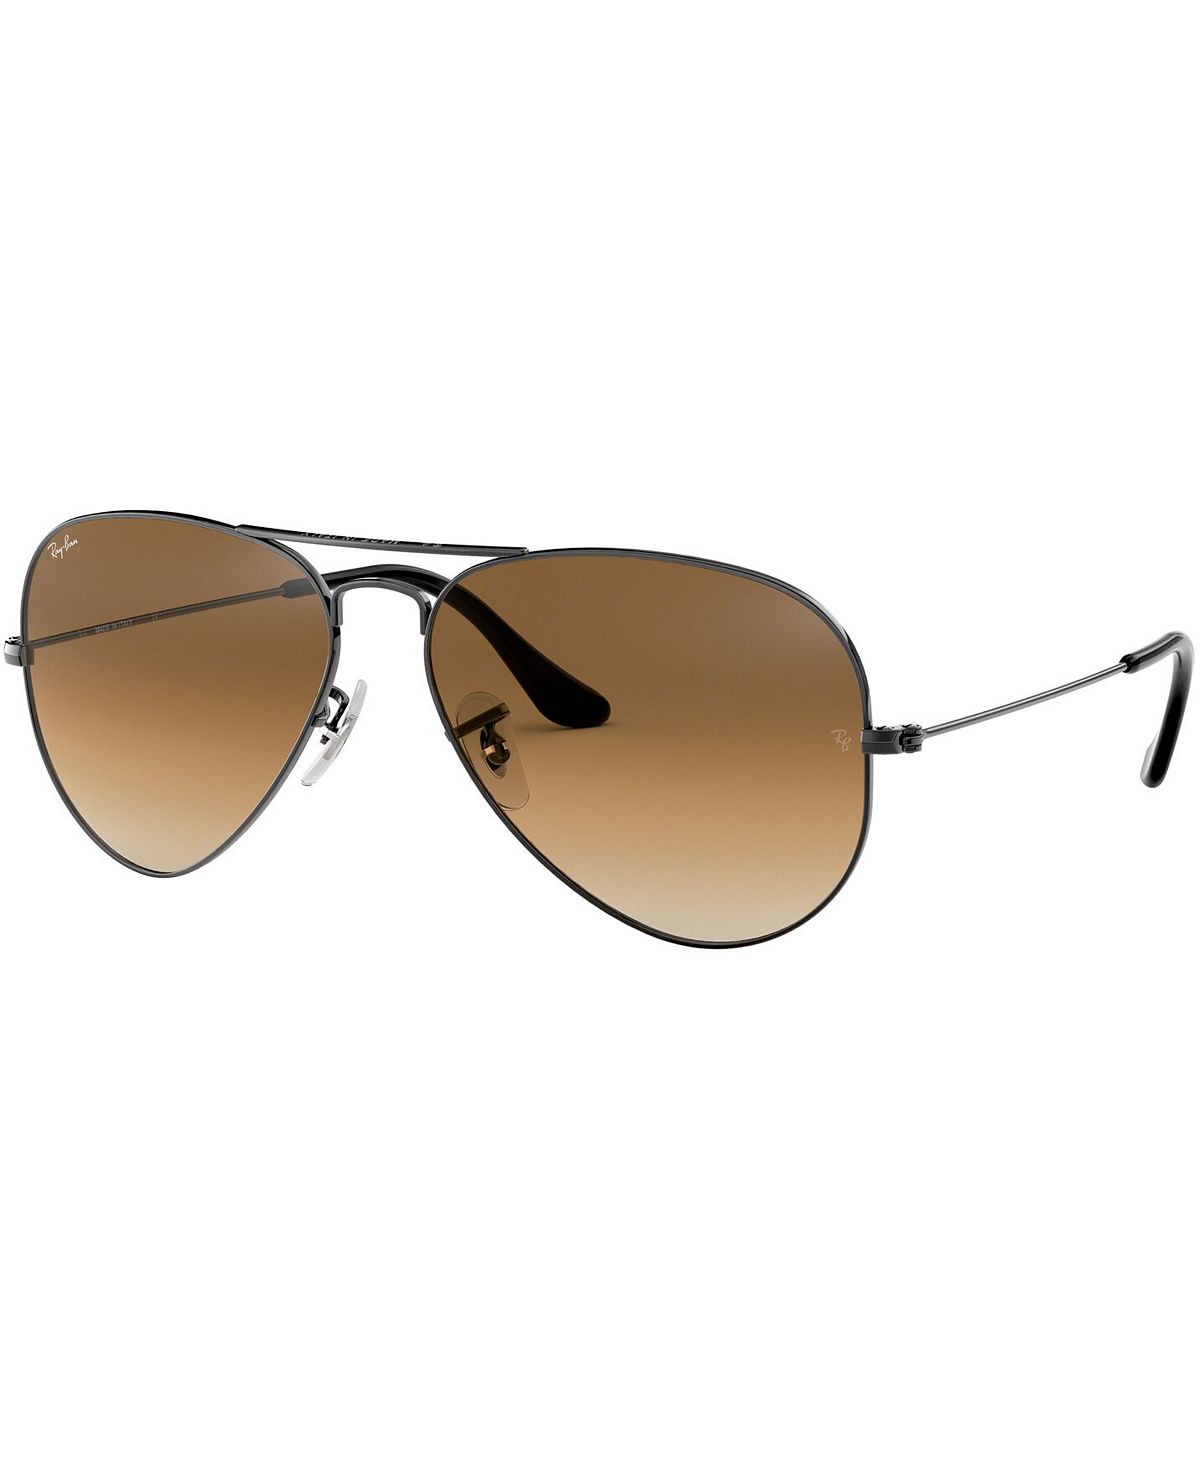 ray ban серый черный Солнцезащитные очки, rb3025 aviator gradient Ray-Ban, мульти